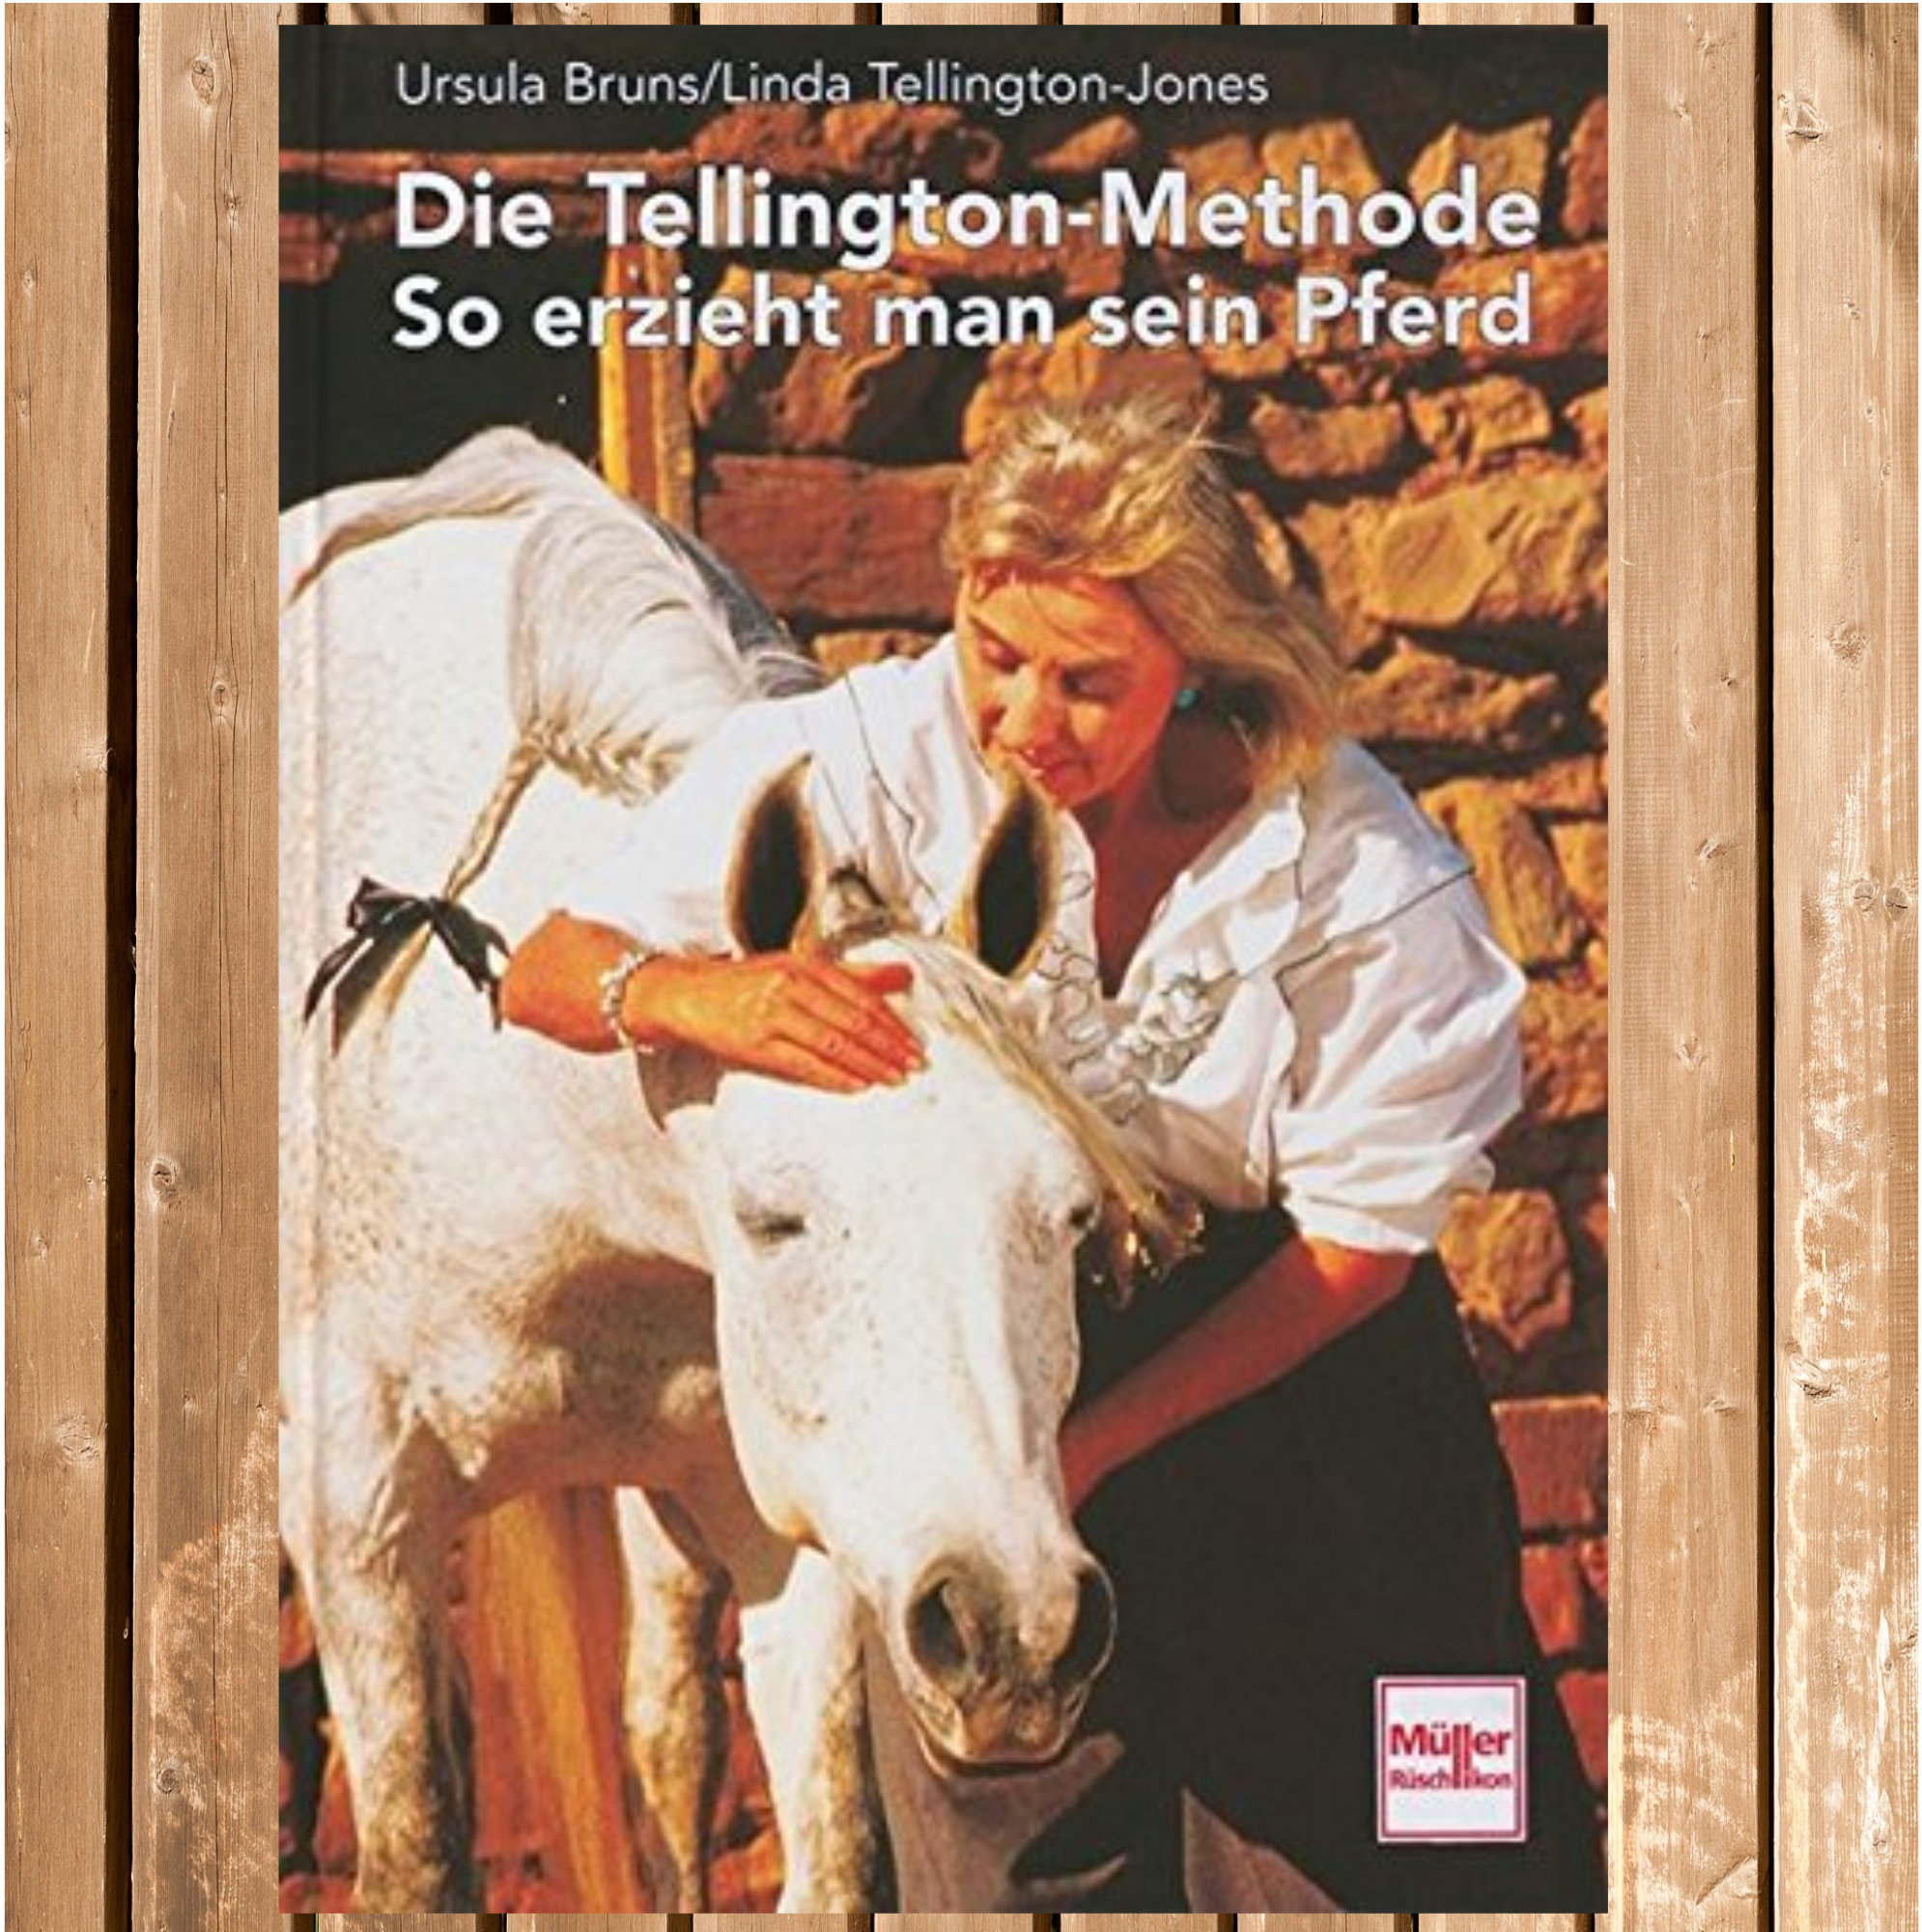 Die Tellington-Methode - So erzieht man sein Pferd